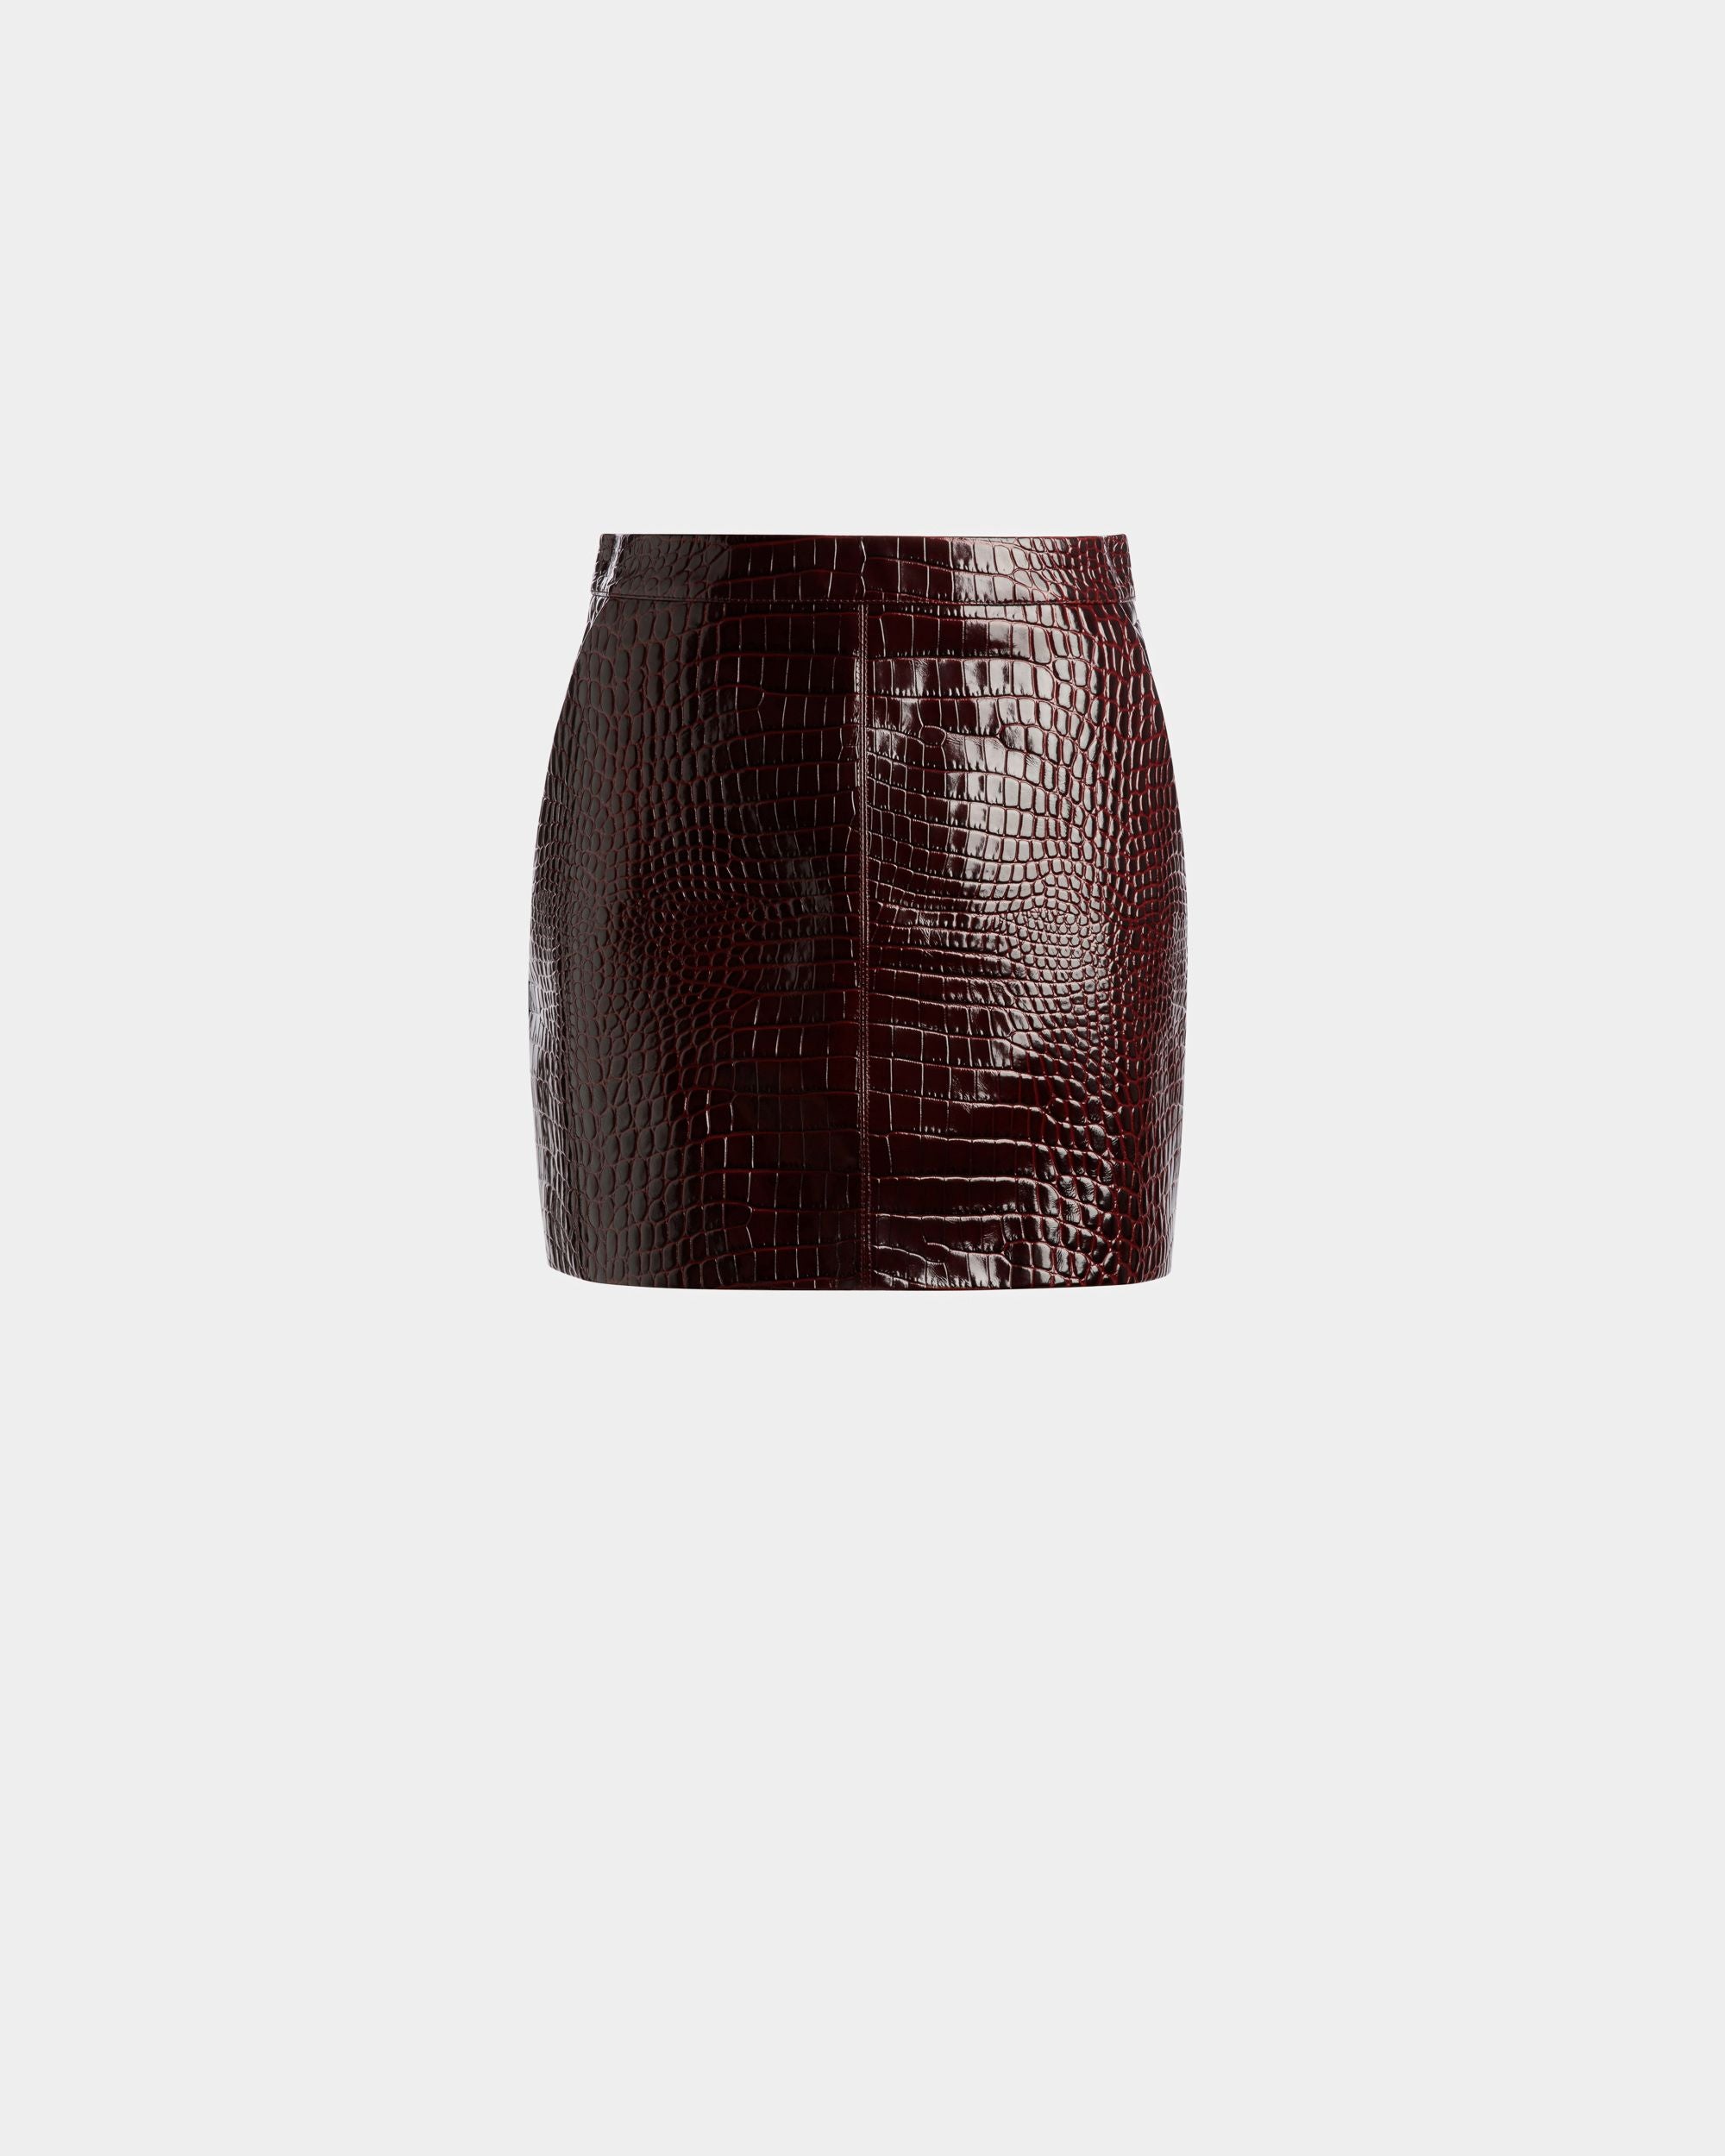 Skirt | Women's Skirt | Burgundy Leather | Bally | Still Life Front